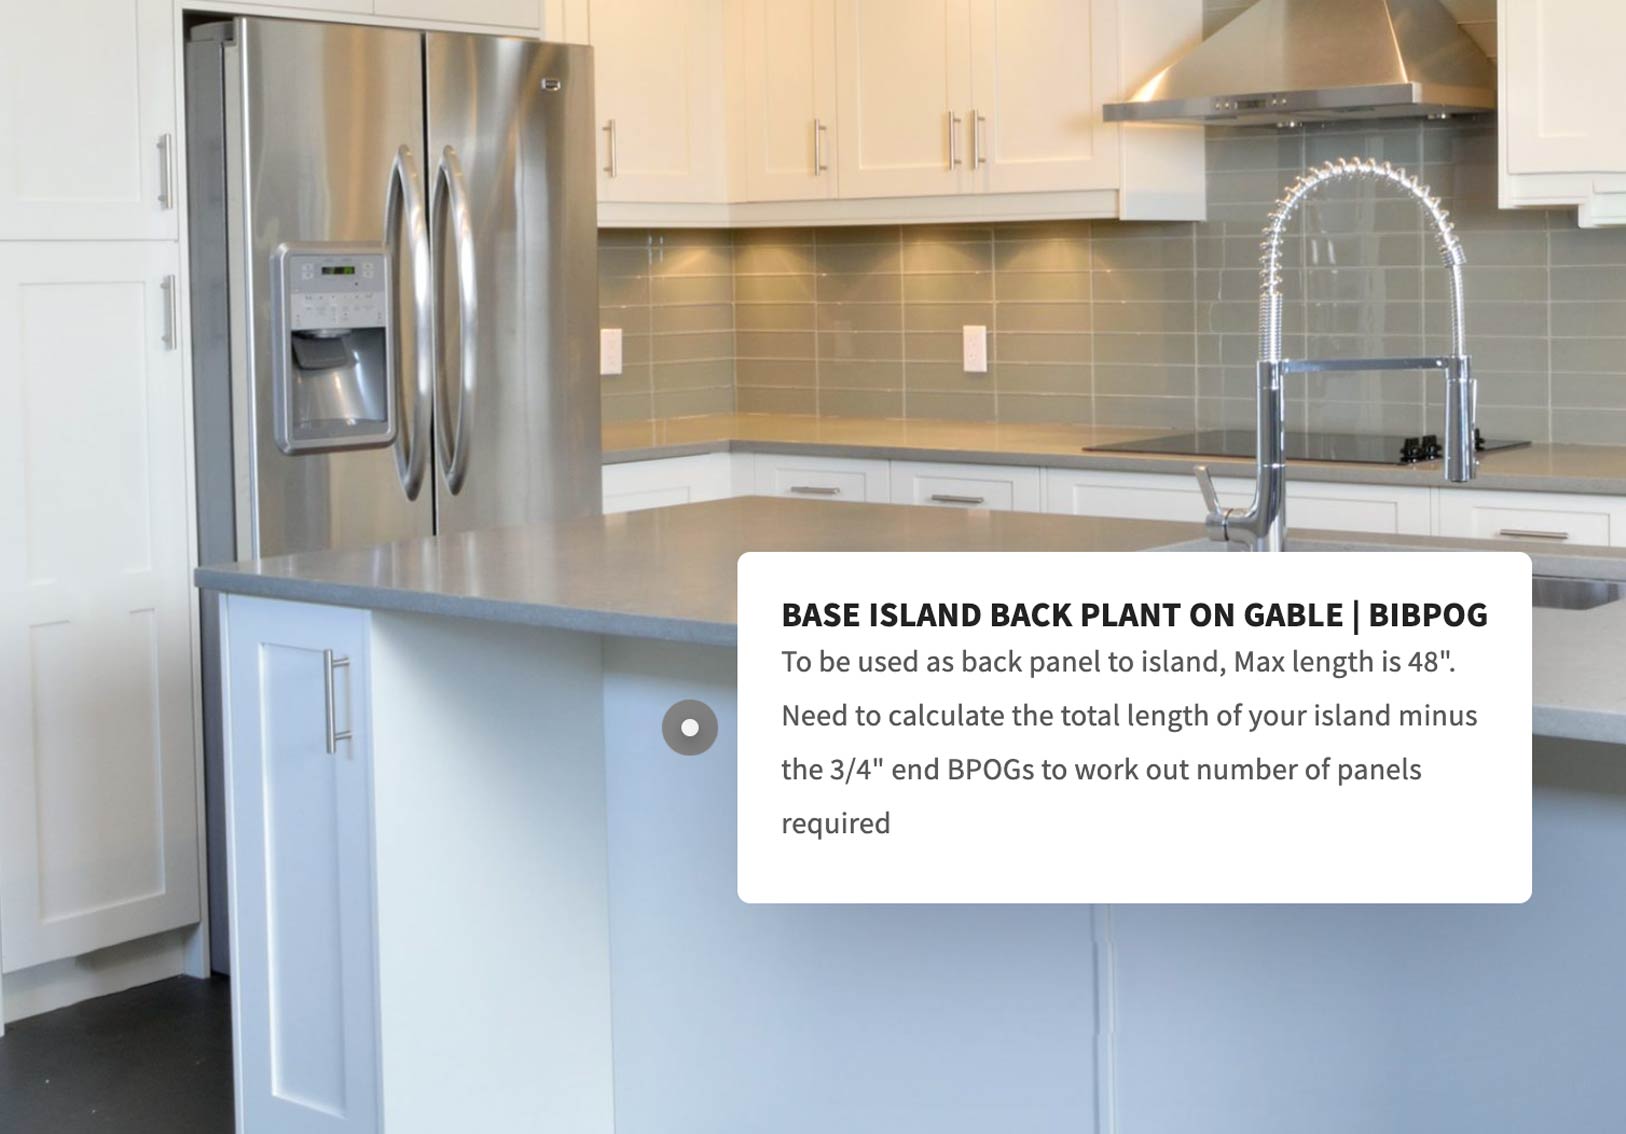 BASE ISLAND BACK PLANT ON GABLE | BIBPOG